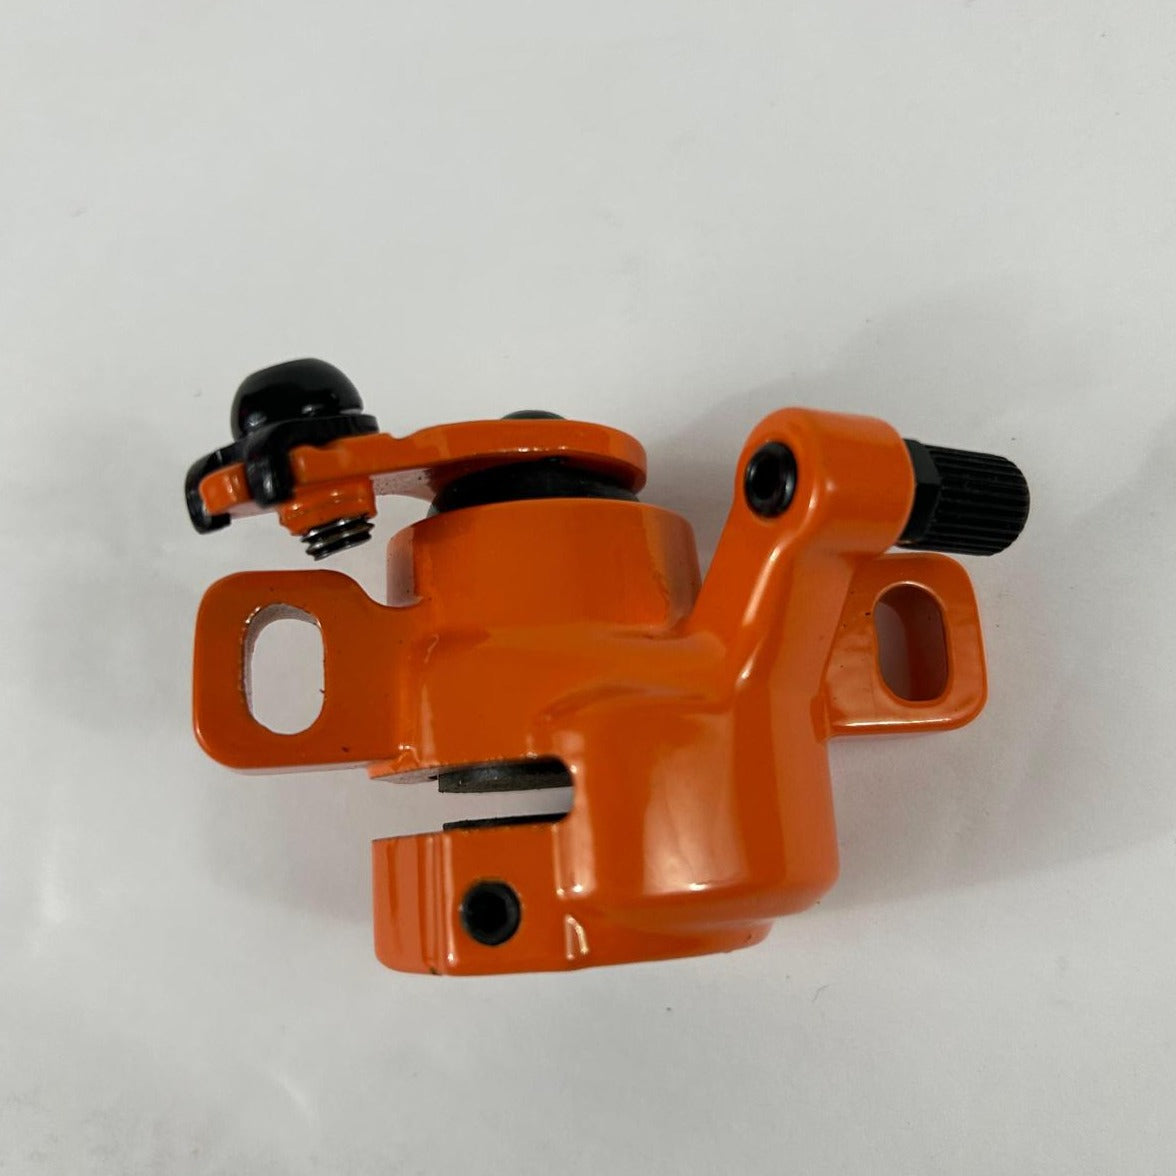 Disk Brake Block for Ninebot Segway Kick Scooter Model F (Orange)